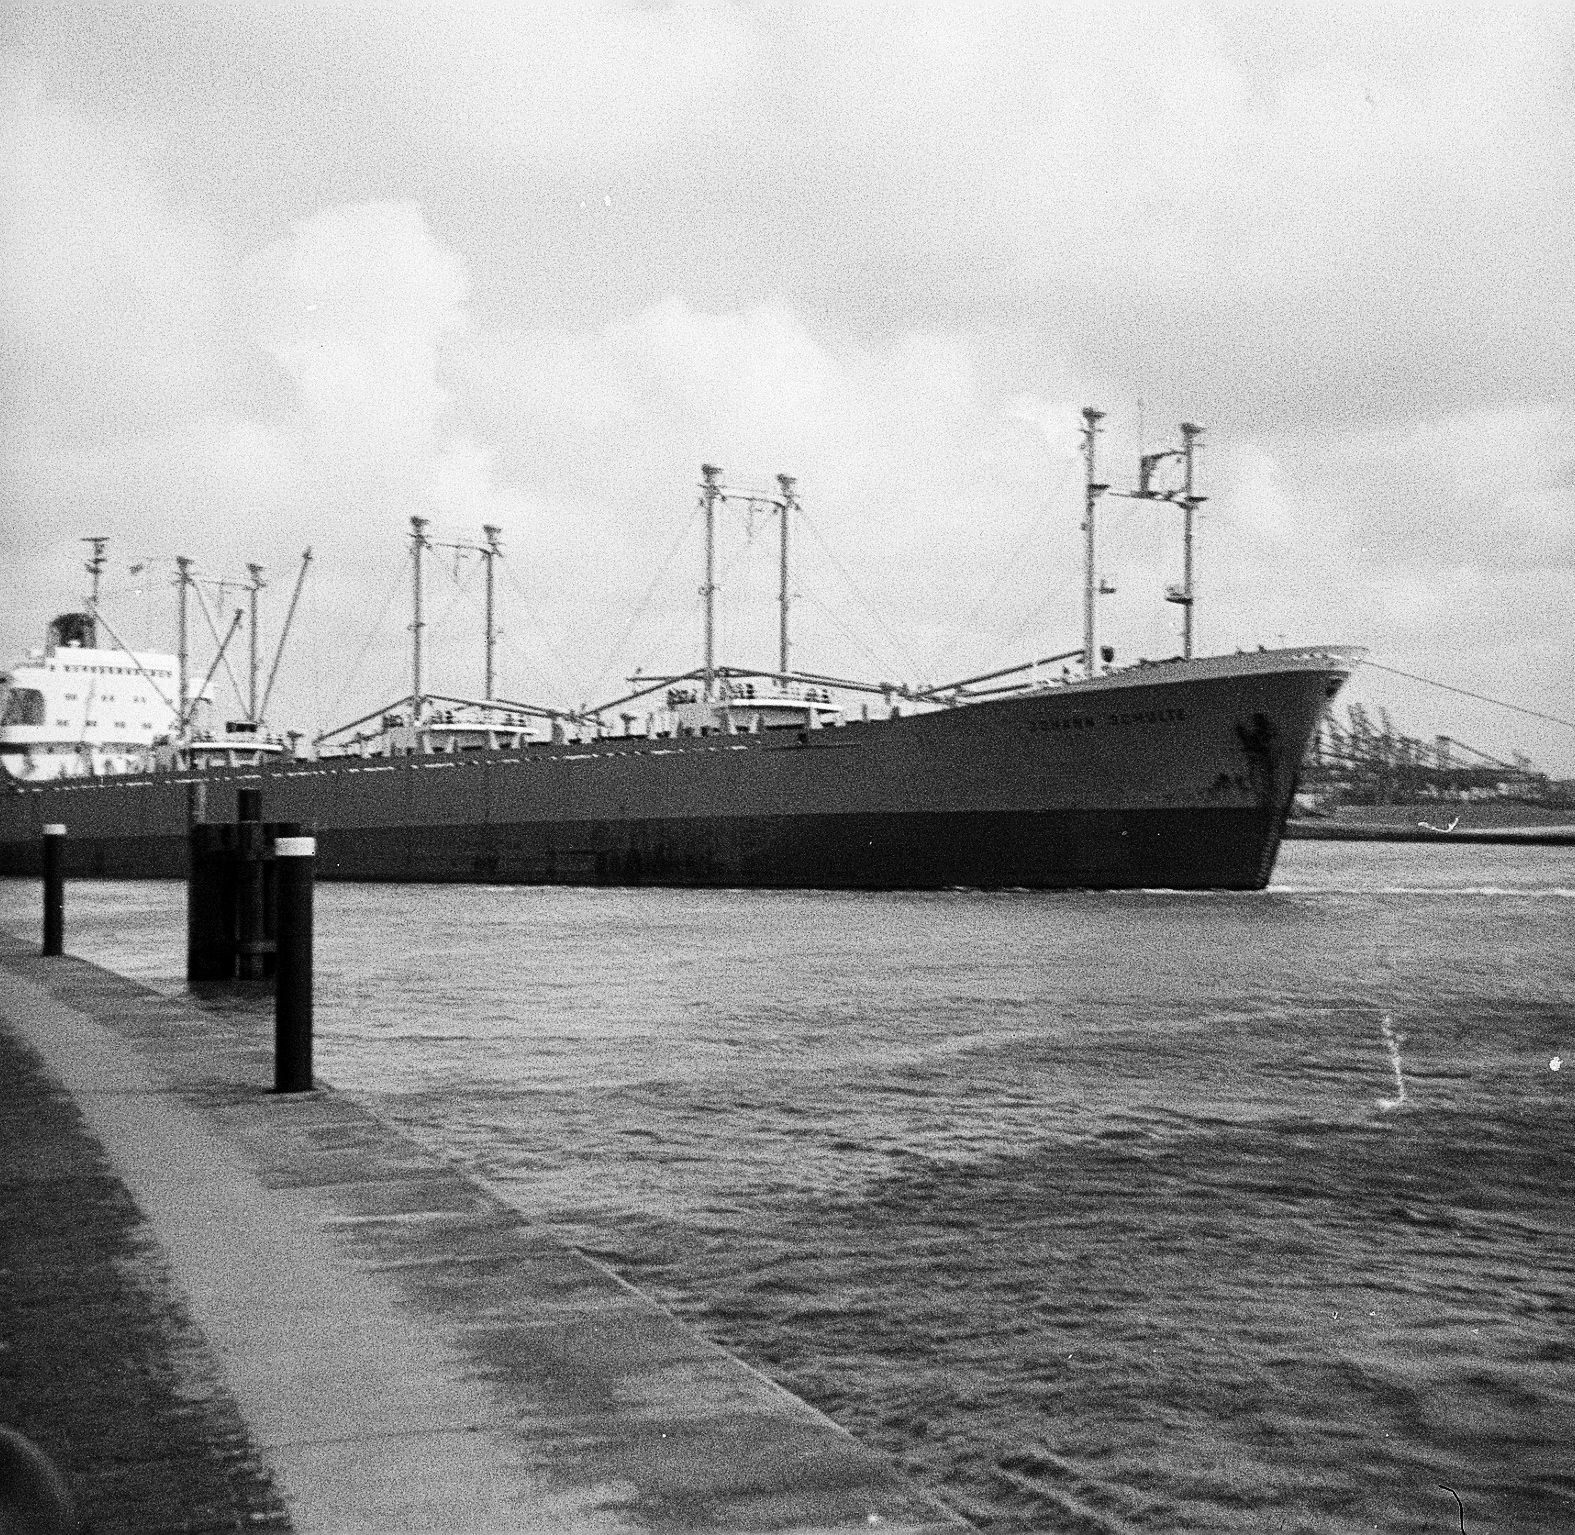 Foto von dem aus dem Hafen Emden in Richtung USA auslaufenden Schiff JOHANN SCHULTE. 1967